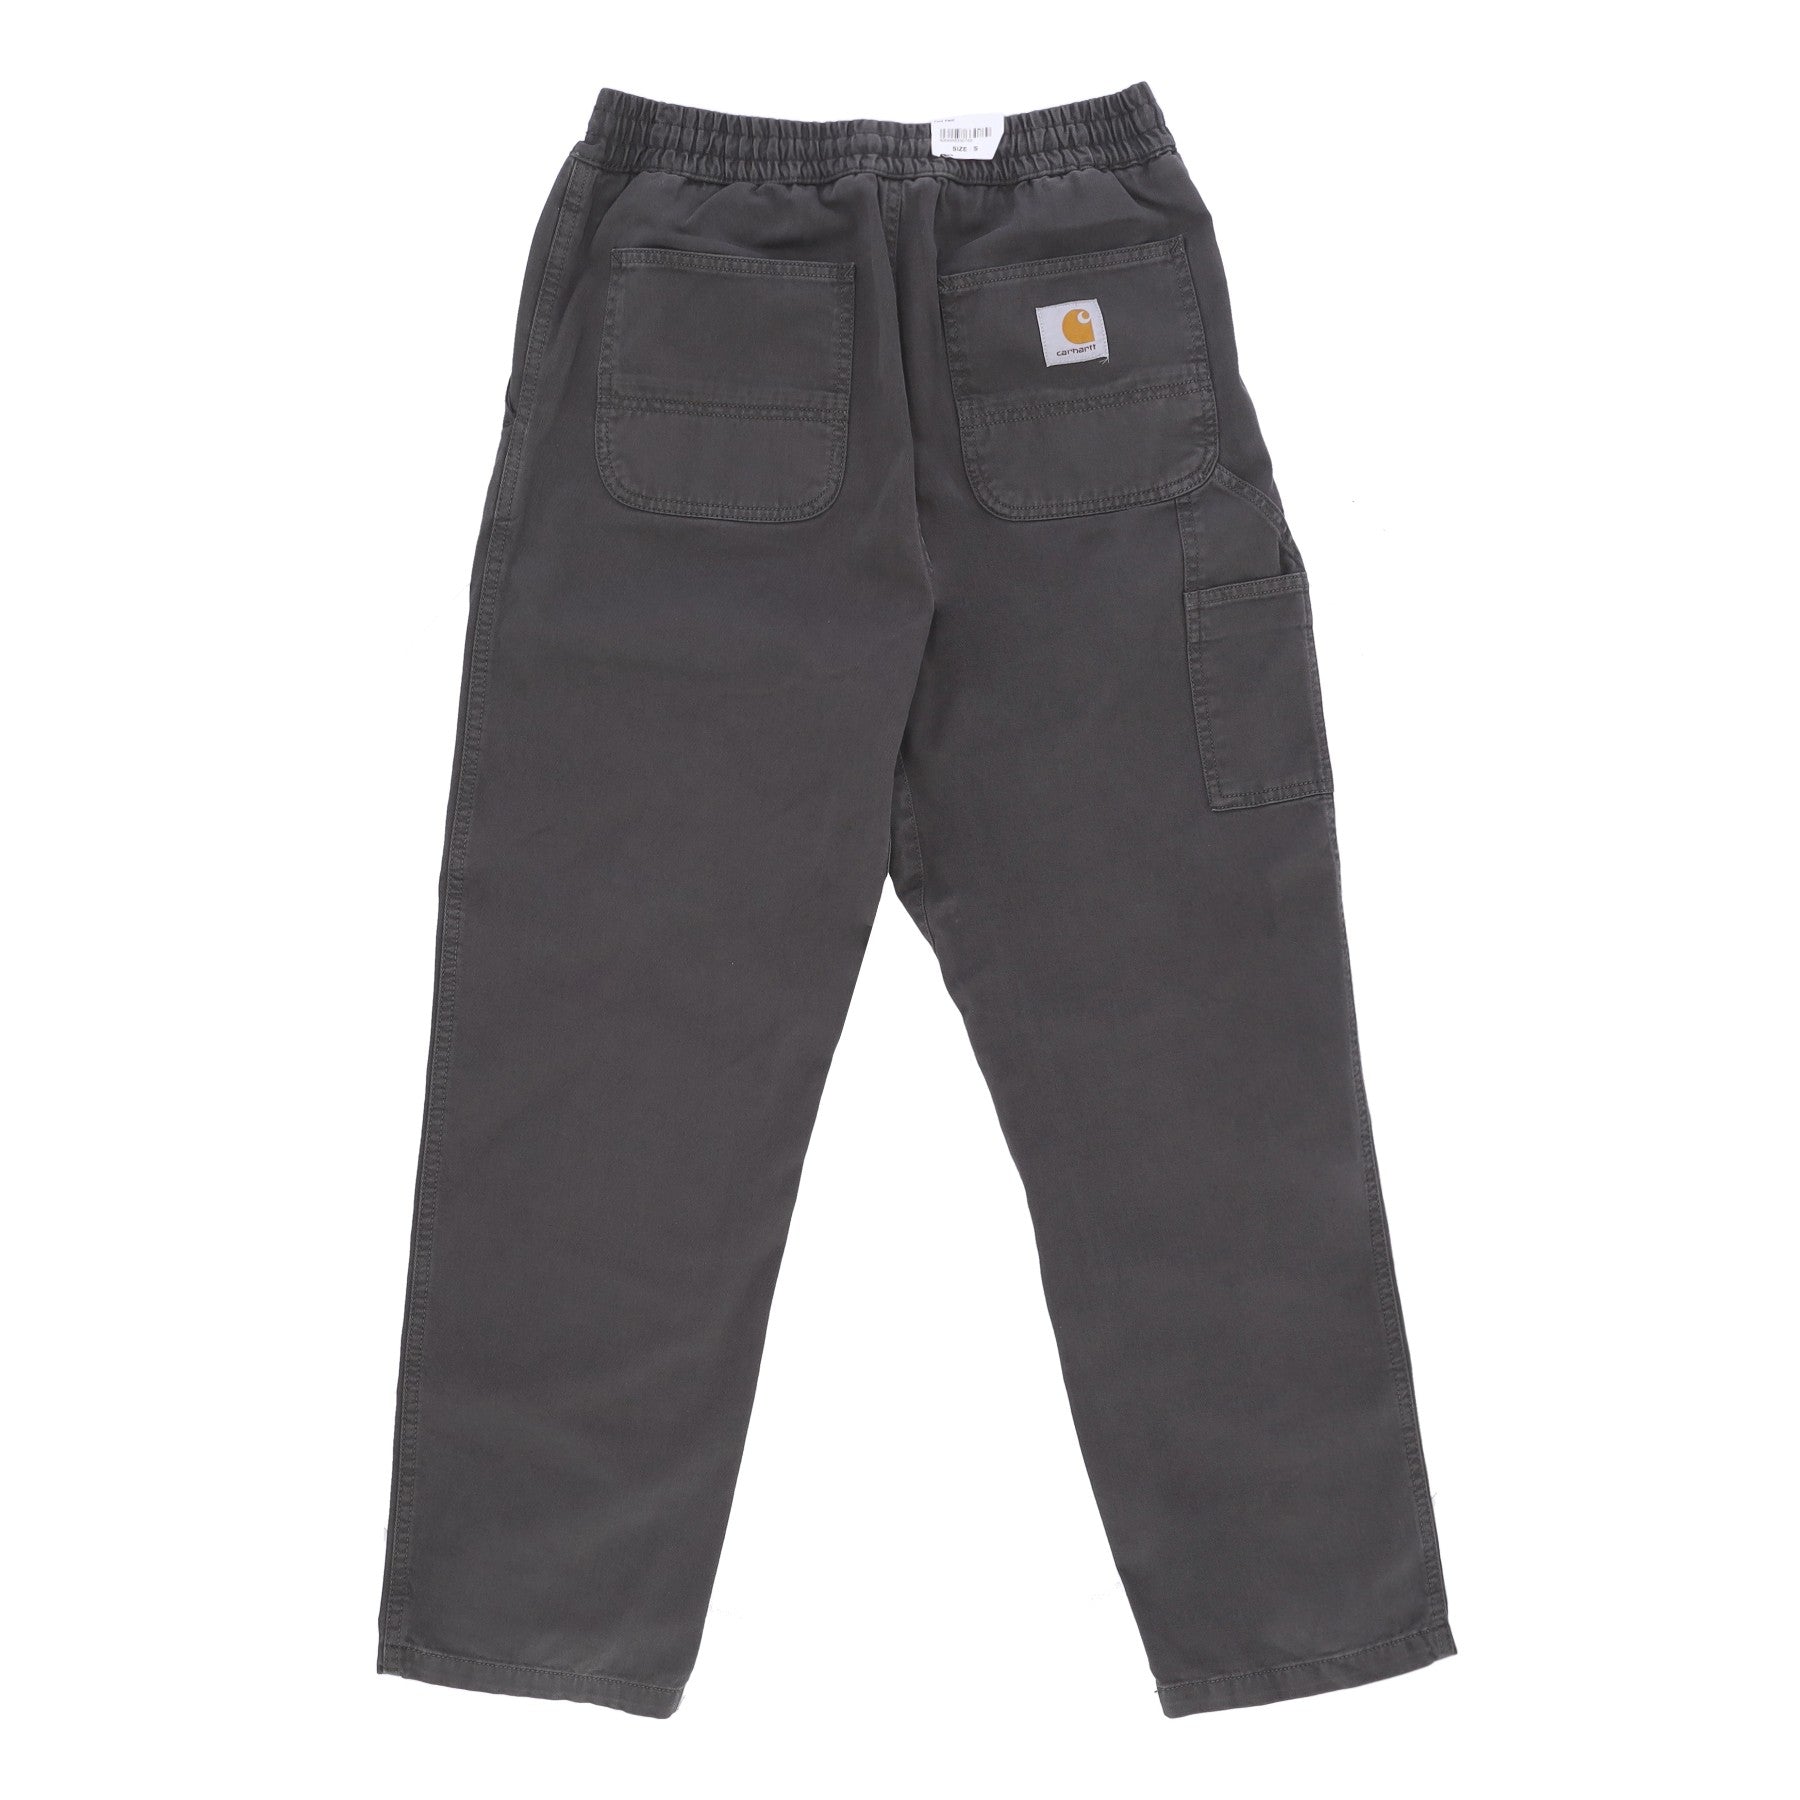 Pantalone Lungo Uomo Flint Pant Boxwood Garment Dyed I029919